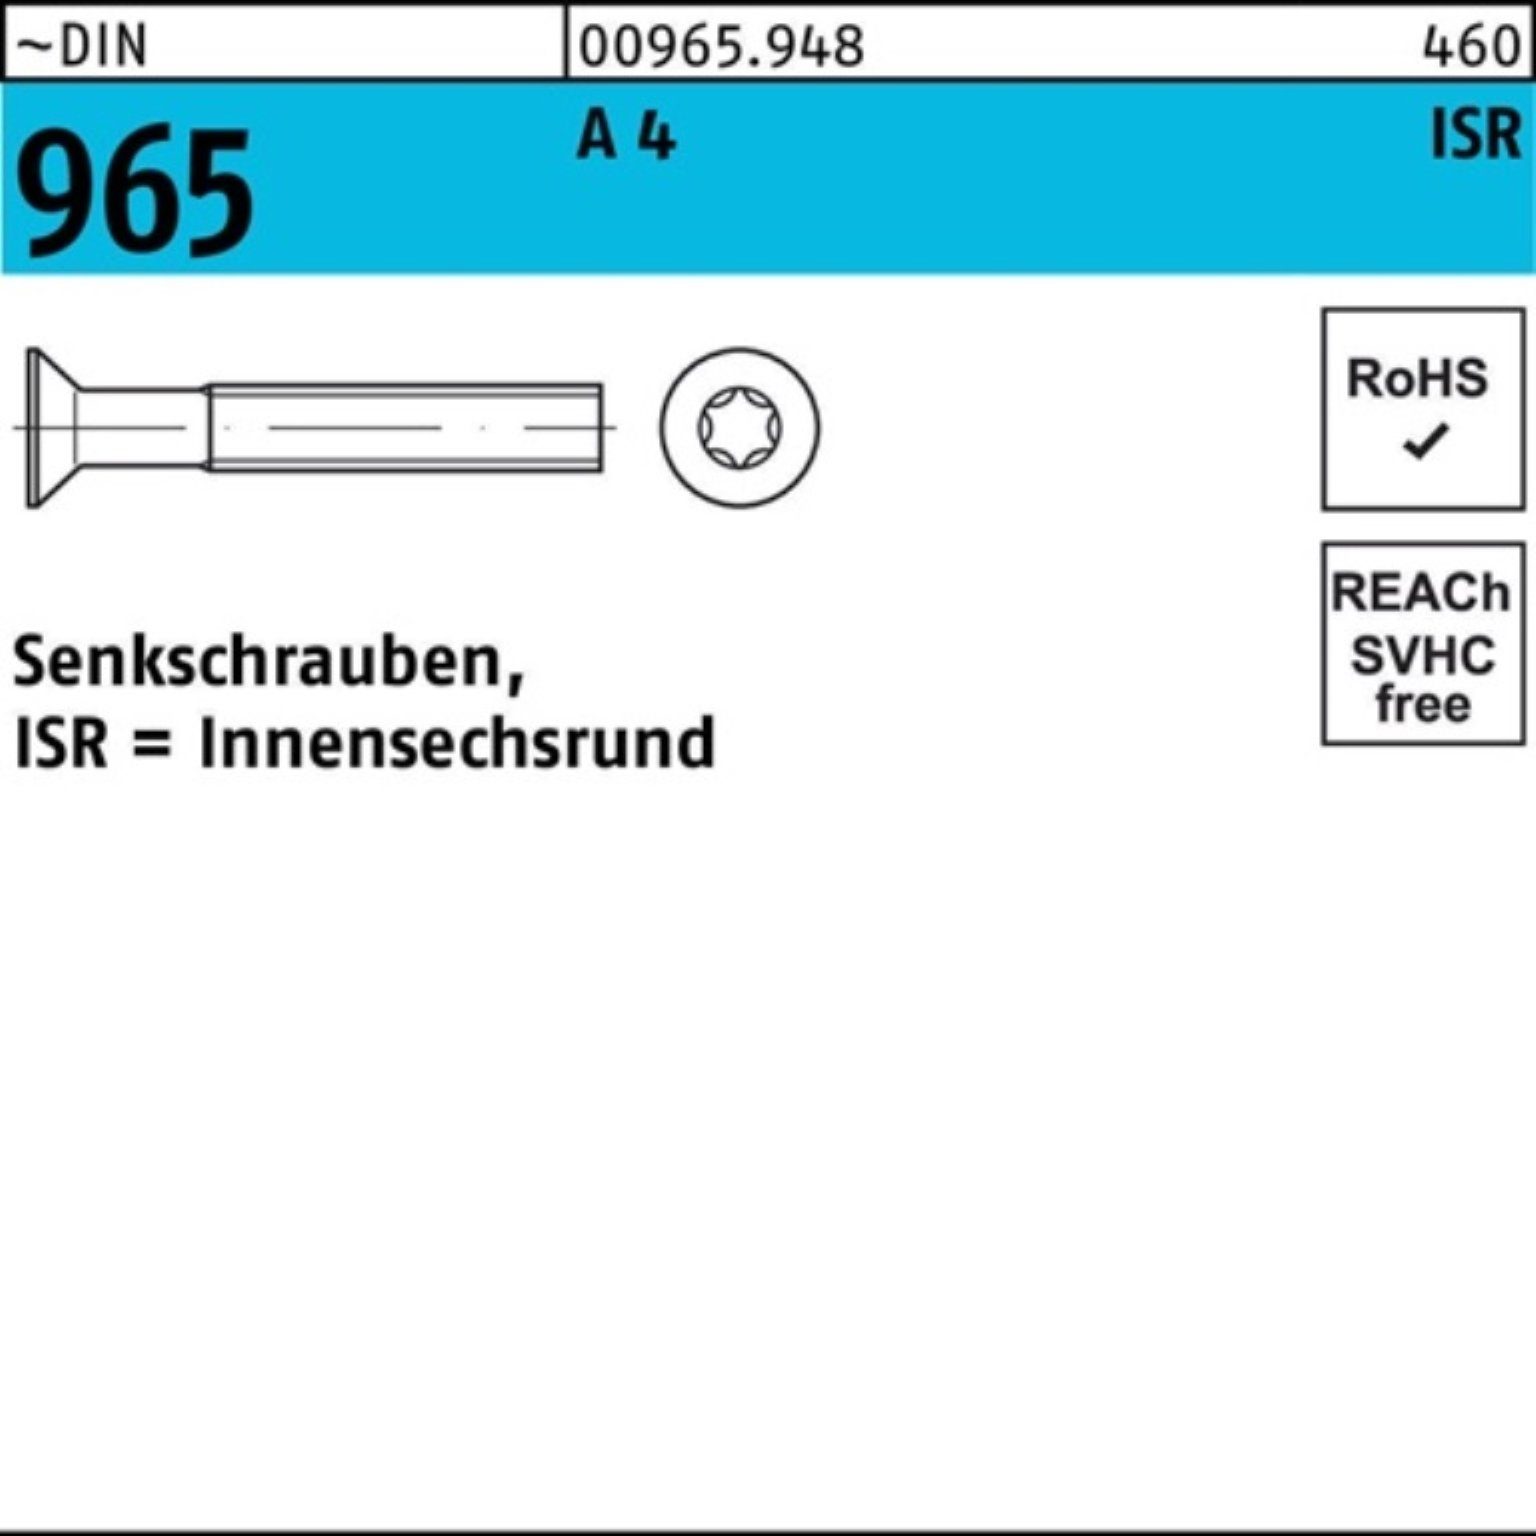 Pack Senkschraube 96 ISR DIN A Senkschraube 4 1000 965 Stück Reyher ~DIN 1000er 5-T10 M3x